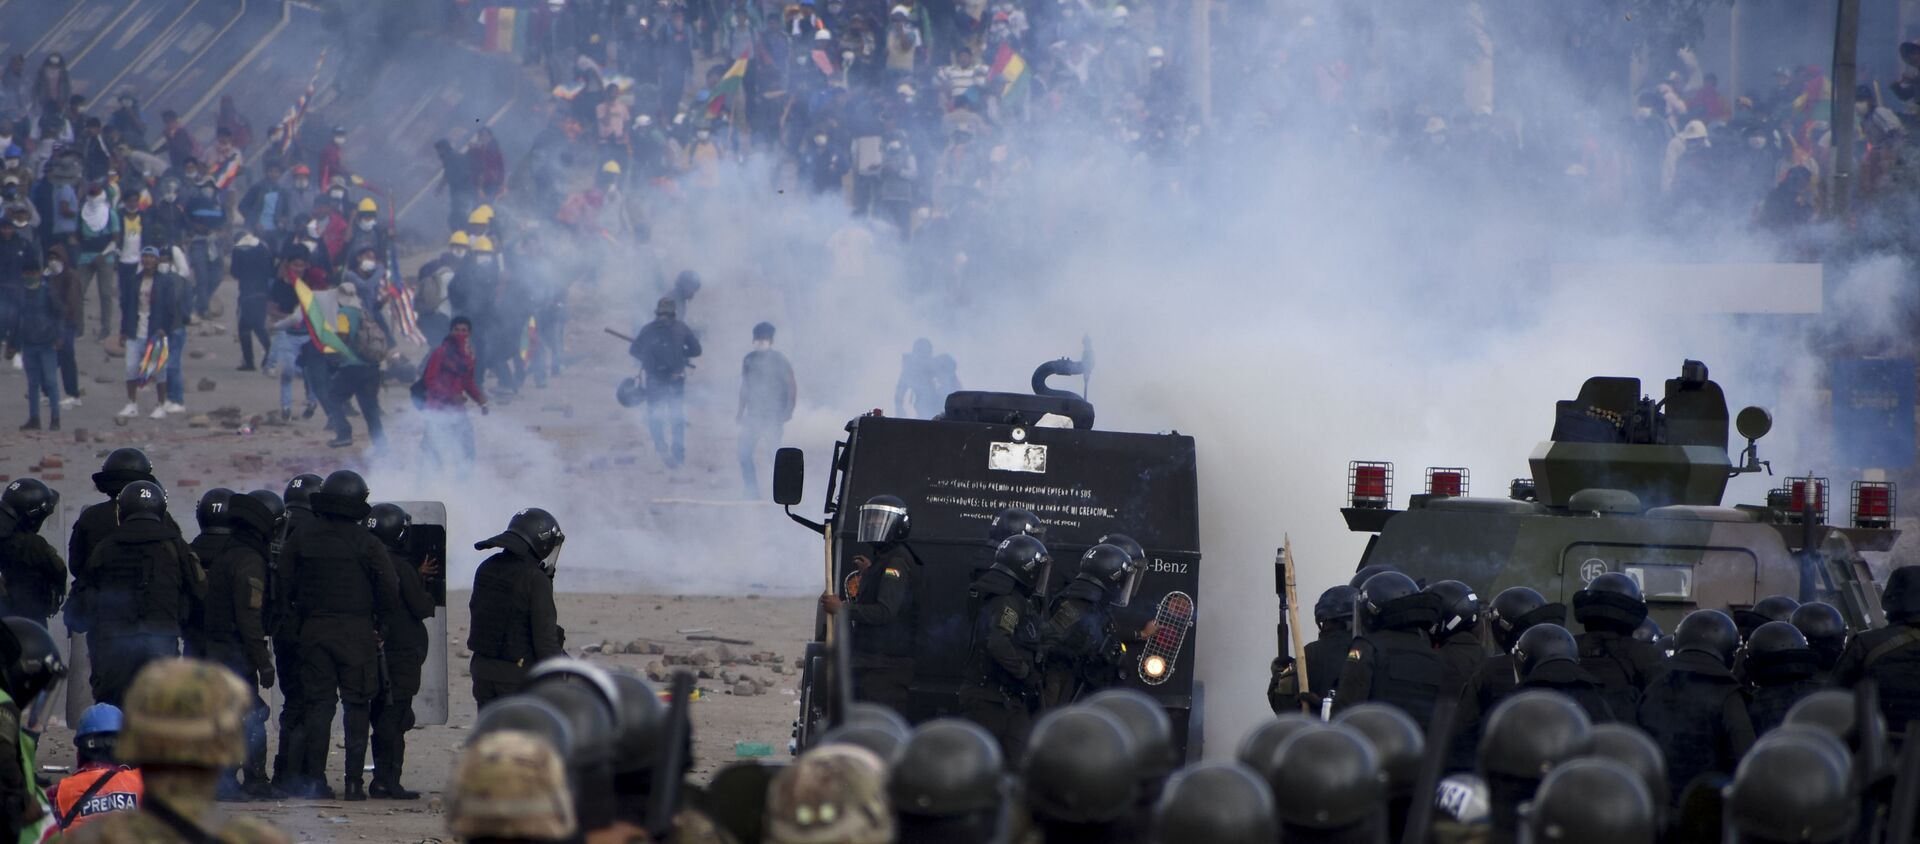 Snage bezbednosti tokom sukoba sa demonstrantima, pristalicama bivšeg bolivijskog predsednika Eva Moralesa, u Sakabi u Boliviji - Sputnik Srbija, 1920, 29.11.2019